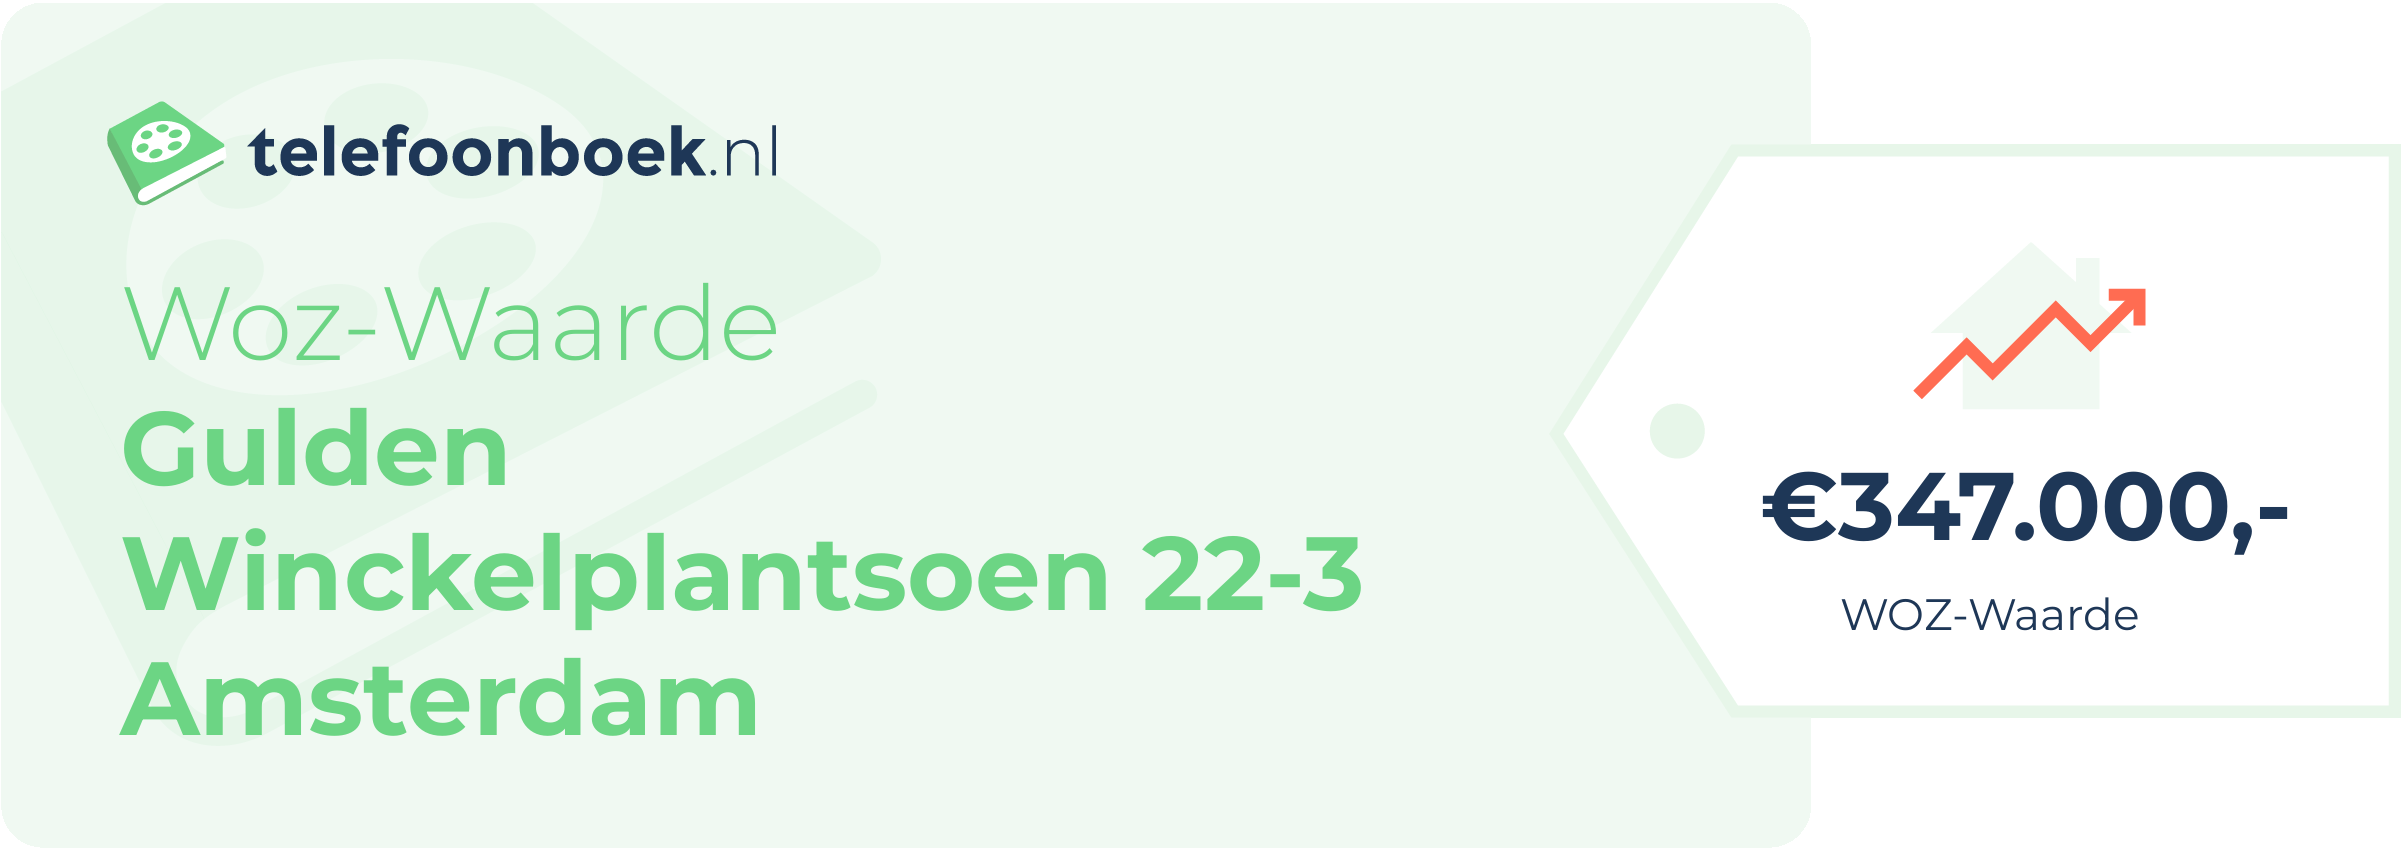 WOZ-waarde Gulden Winckelplantsoen 22-3 Amsterdam